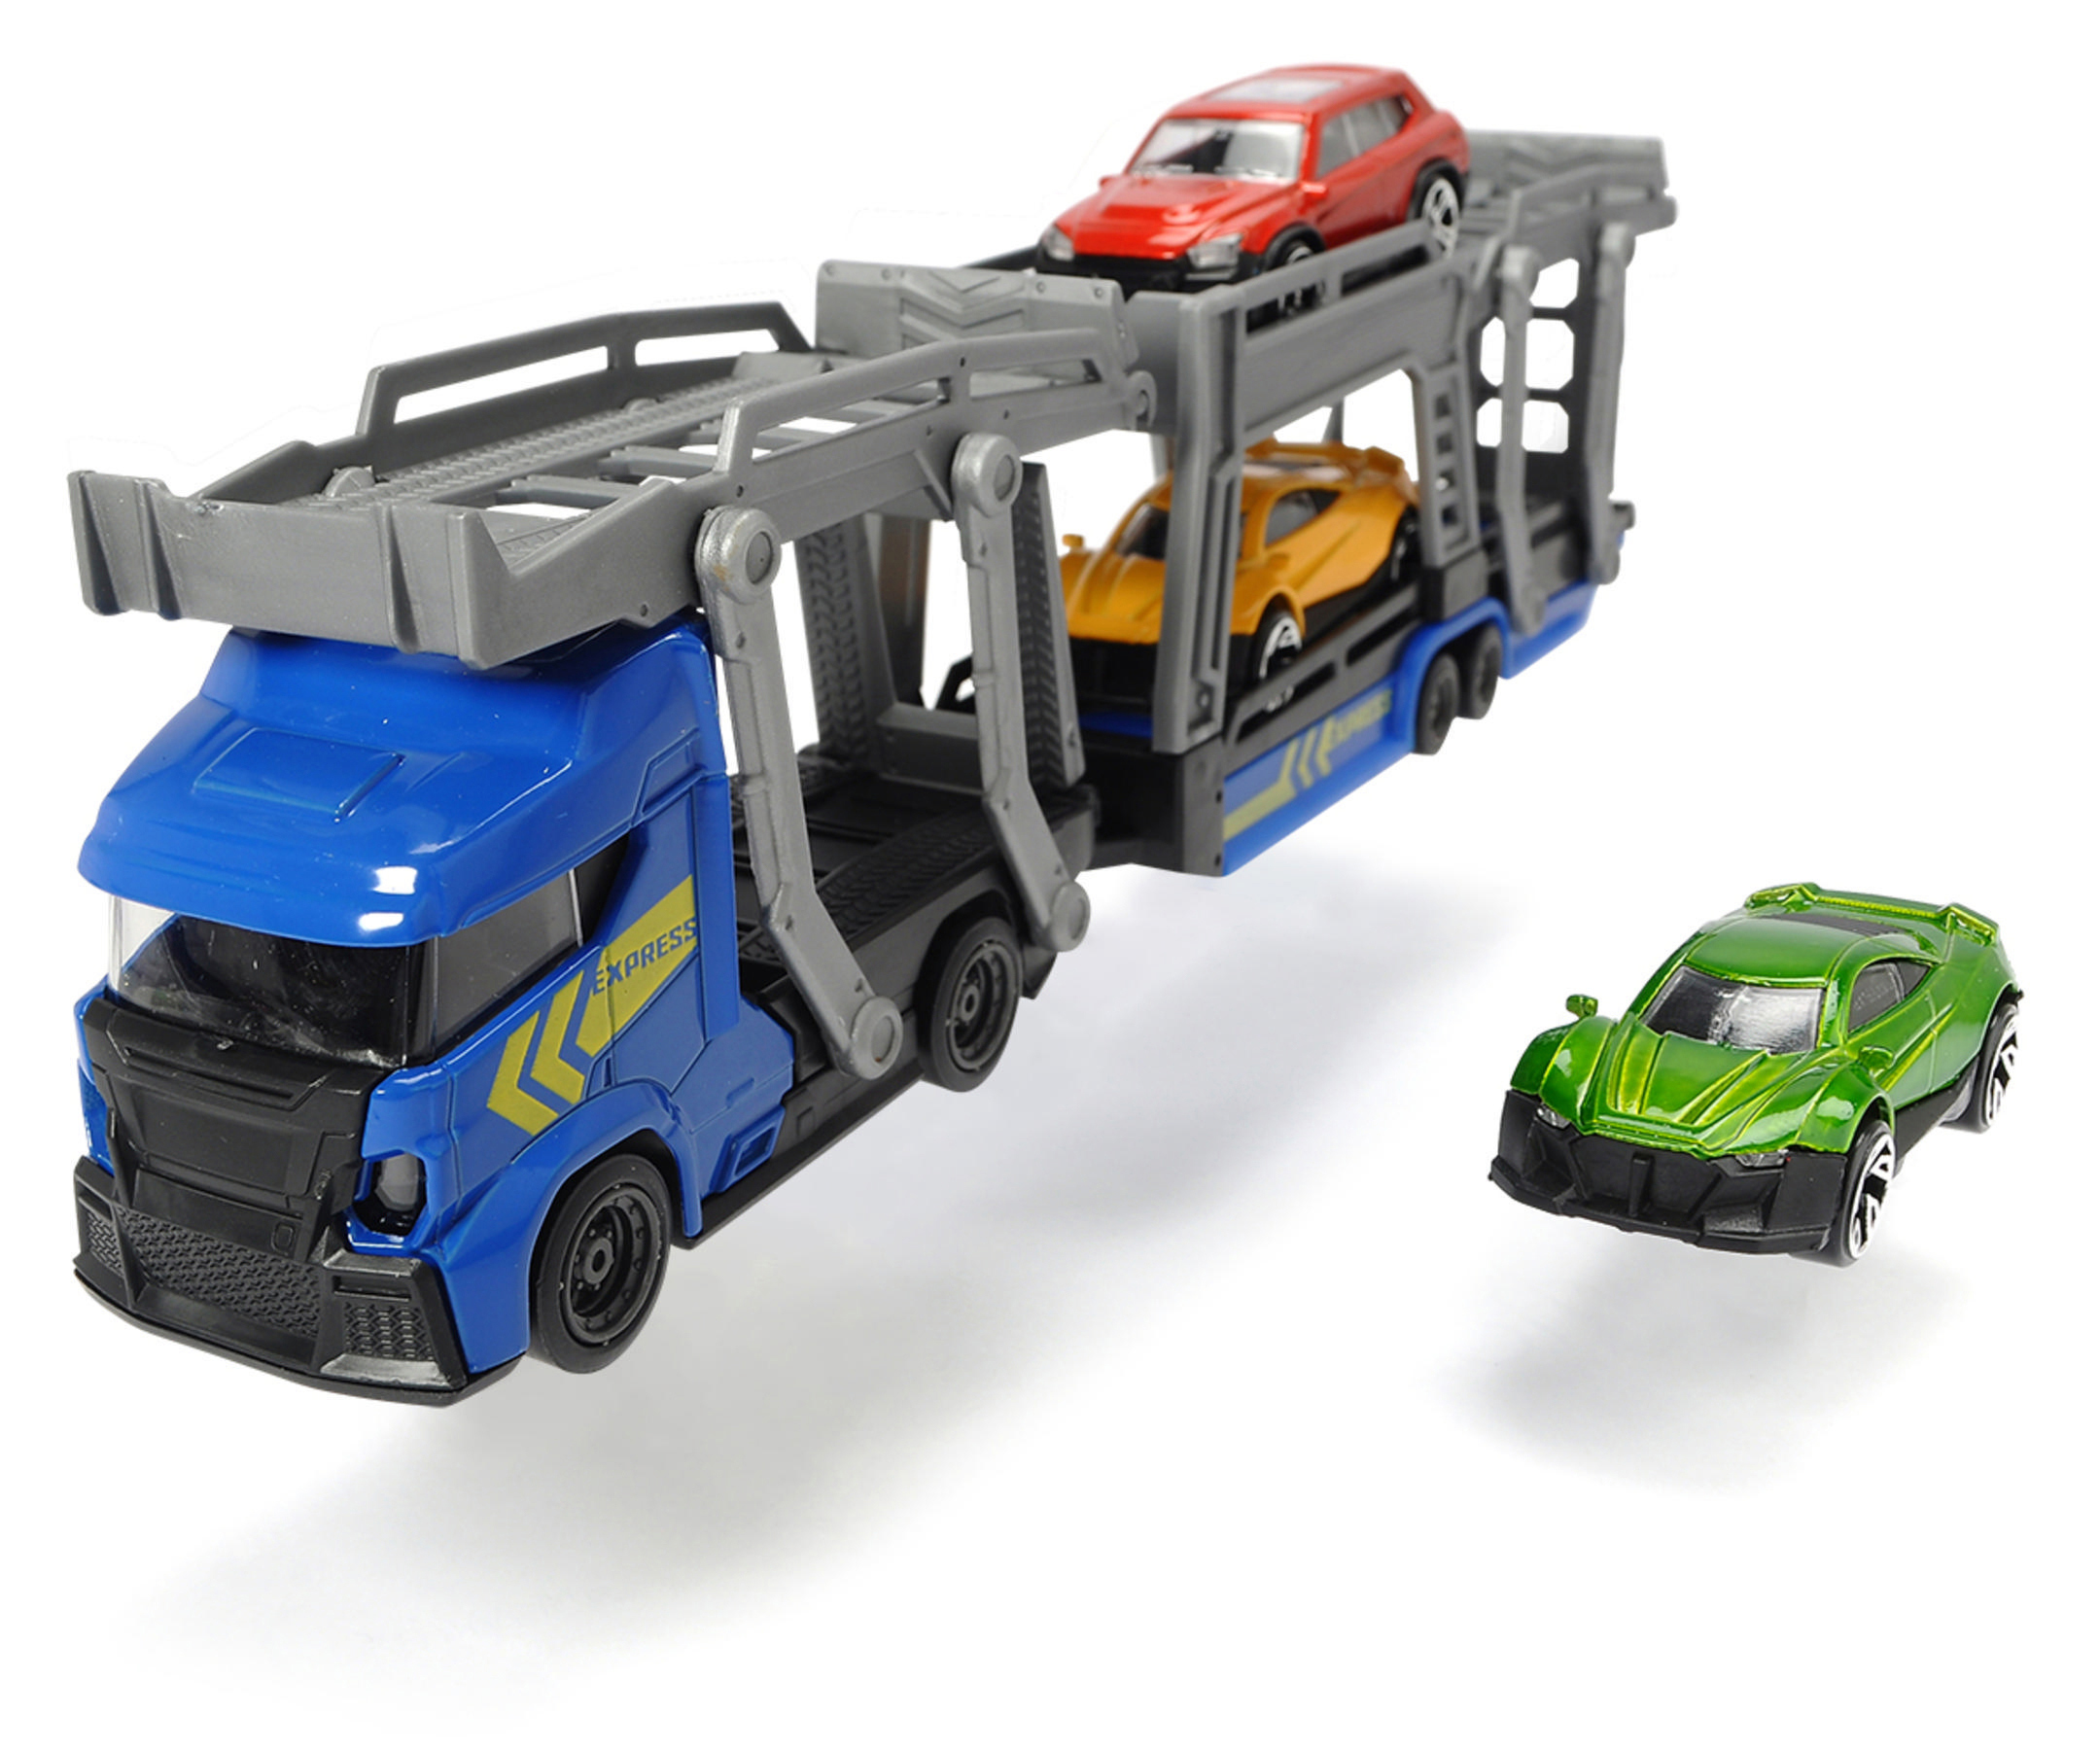 Freilauf, Mehrfarbig für Car DICKIE-TOYS Spielzeugauto 3 mit Autos inkl. PKW\'s, Die-cast Autotransporter 3 2-fach sortiert Carrier,